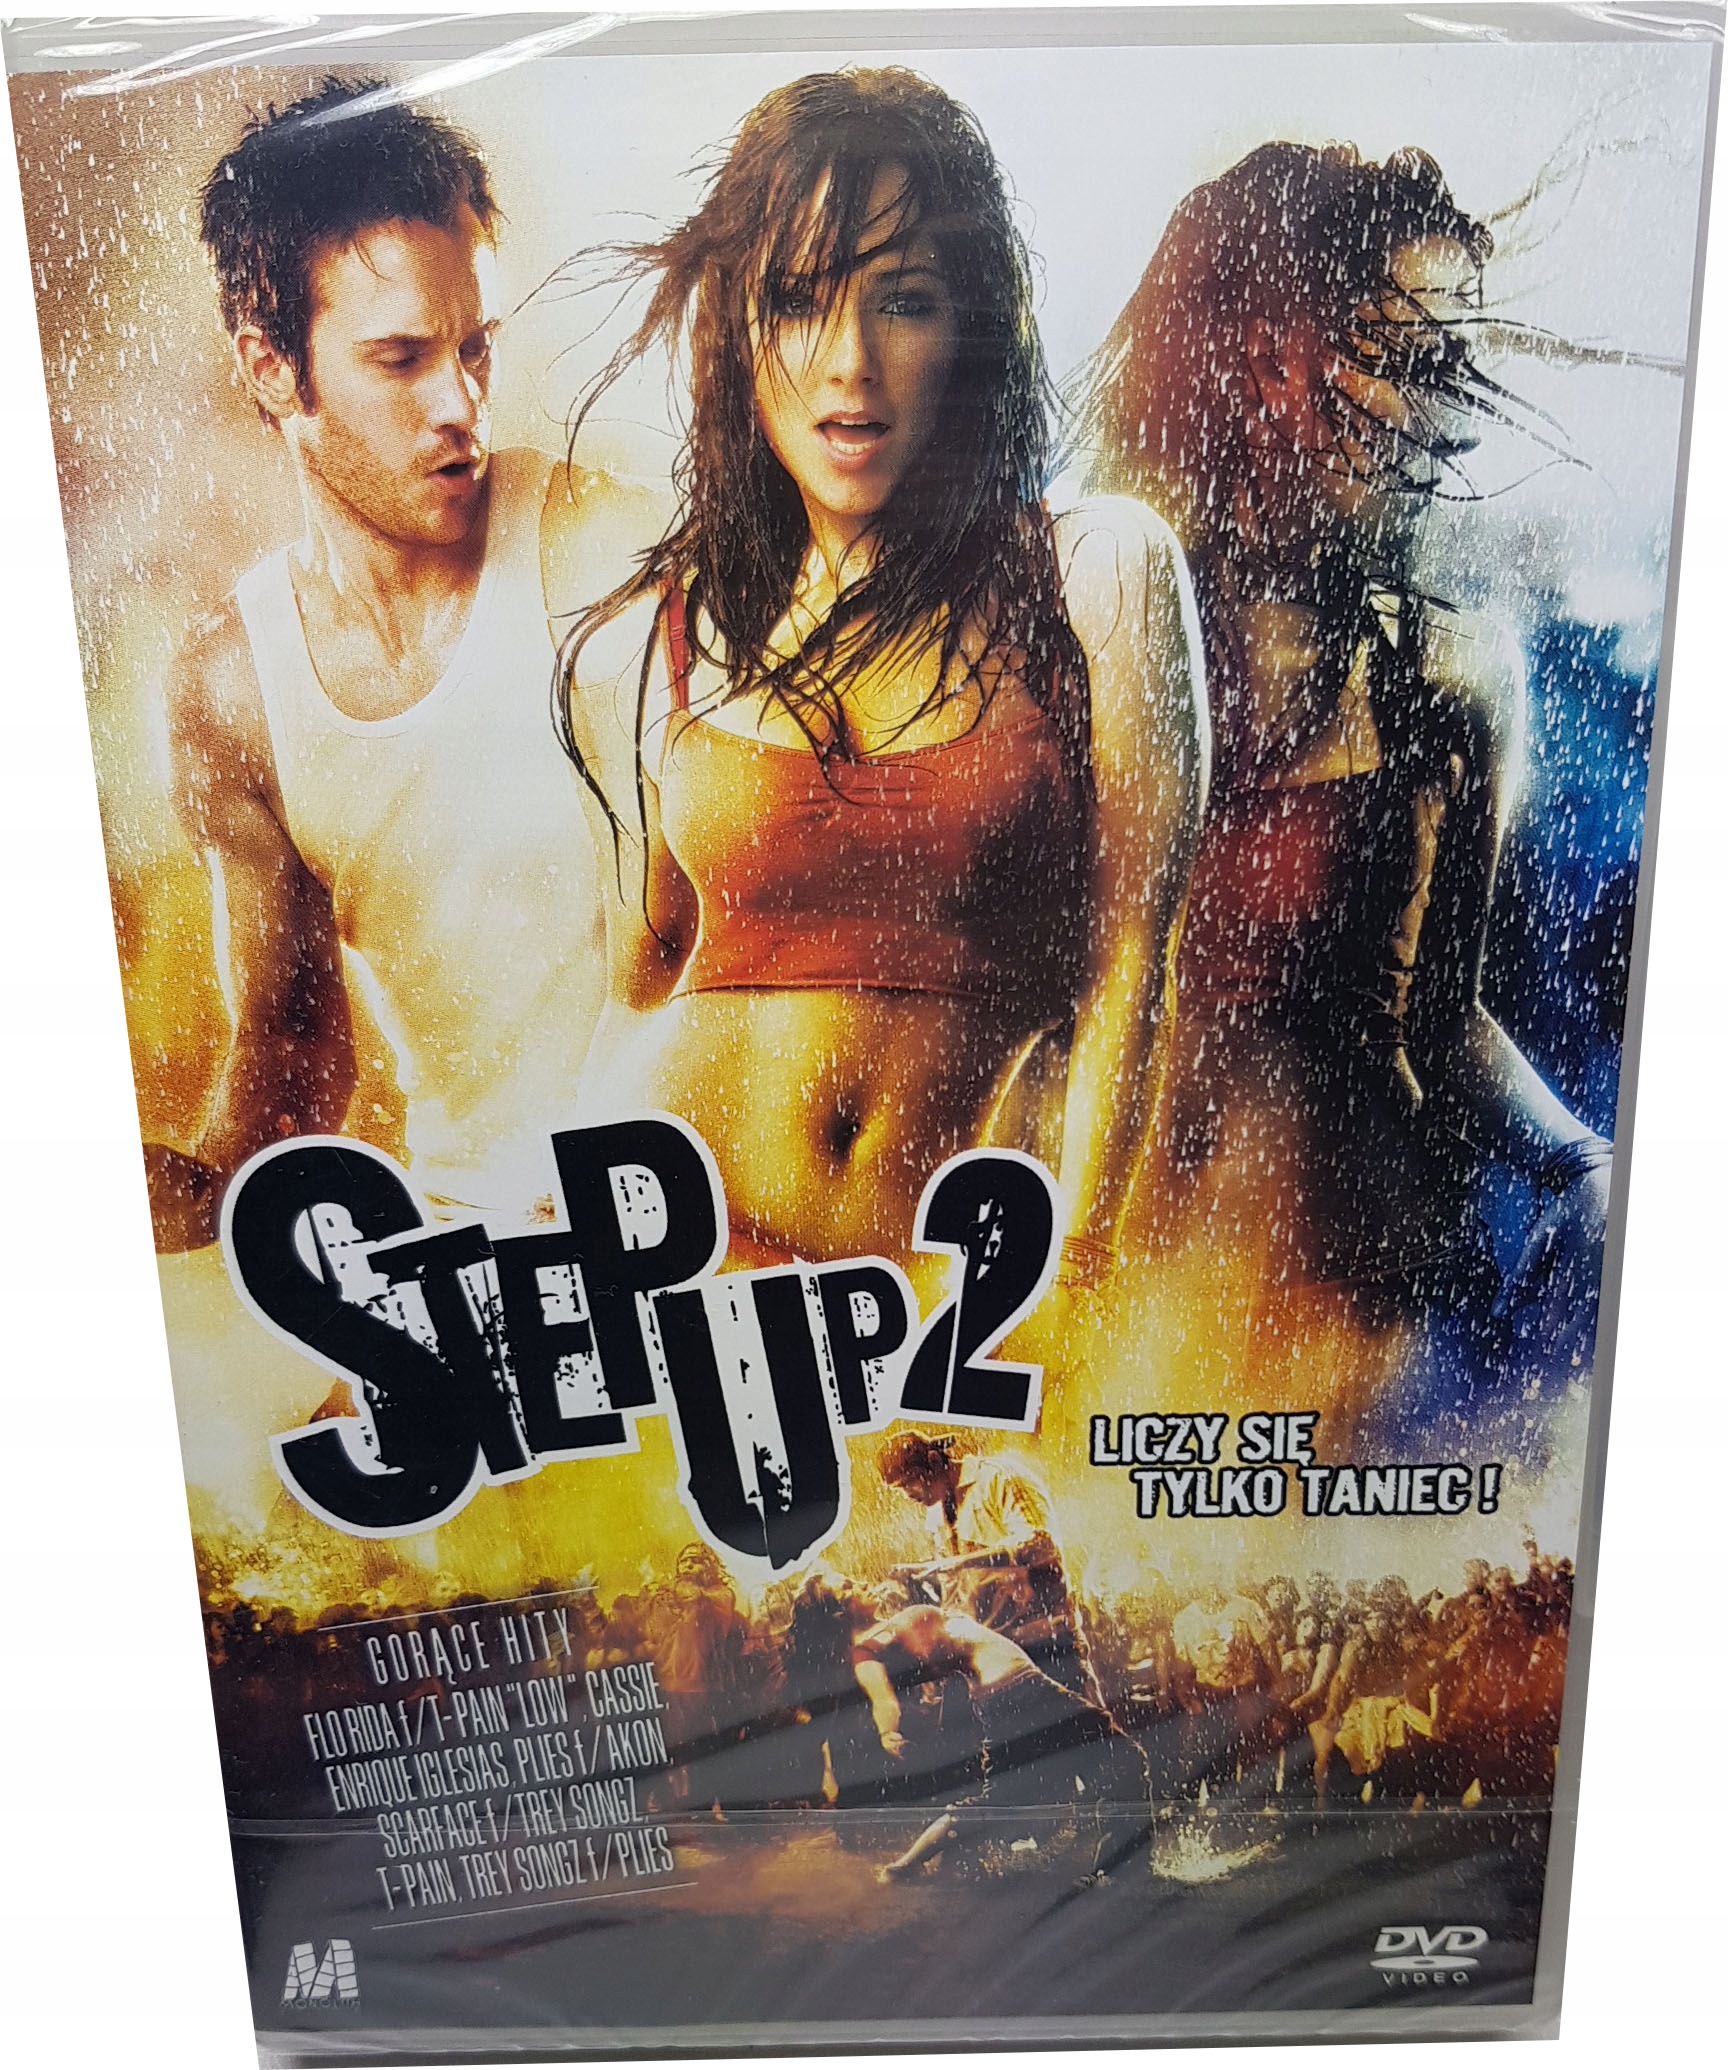 STEP UP 2 DVD 11623000060 - Sklepy, Opinie, Ceny w Allegro.pl